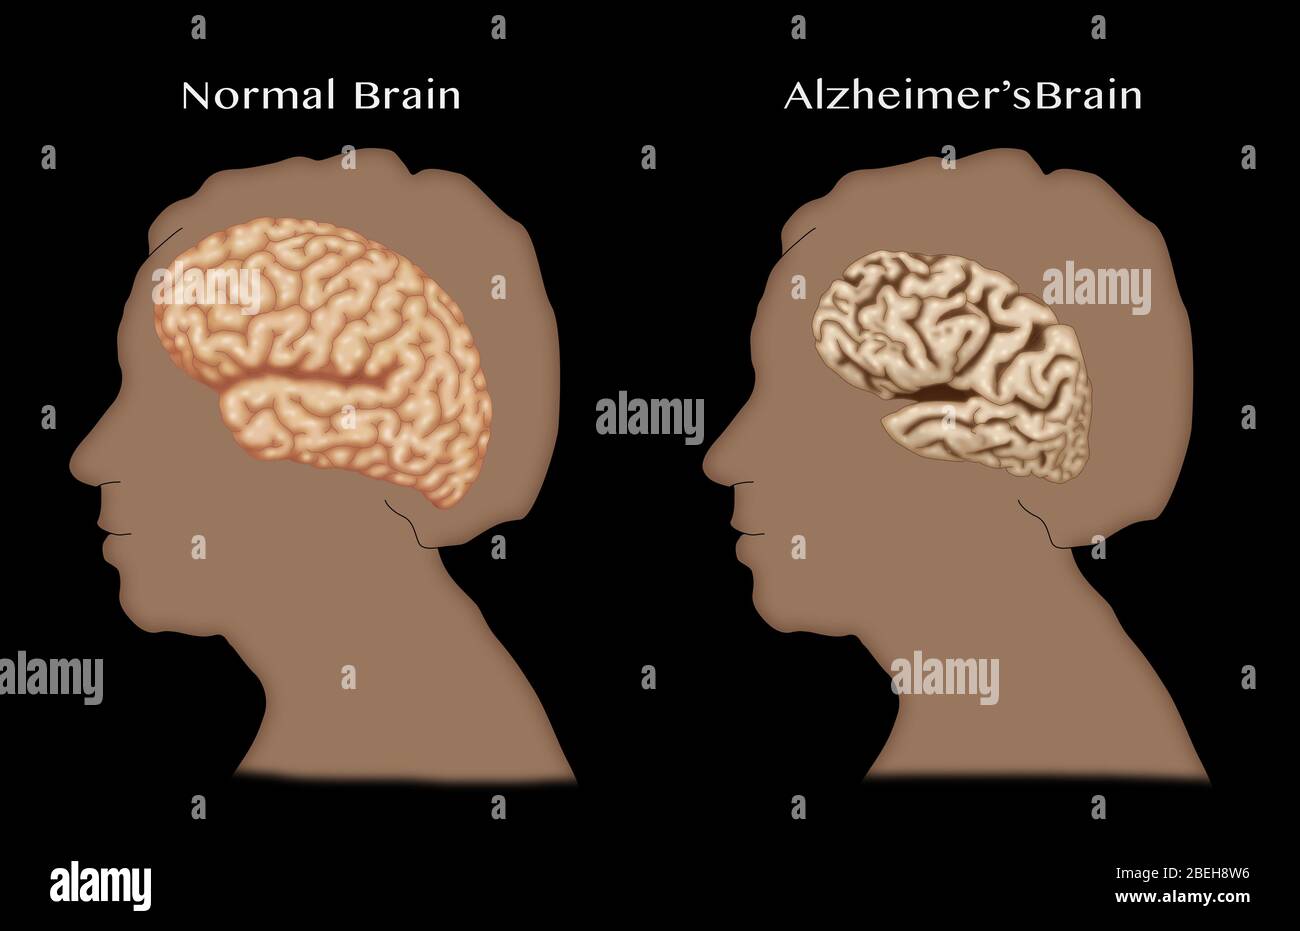 Alzheimer und normale Gehirne, Vergleich Stockfotografie - Alamy